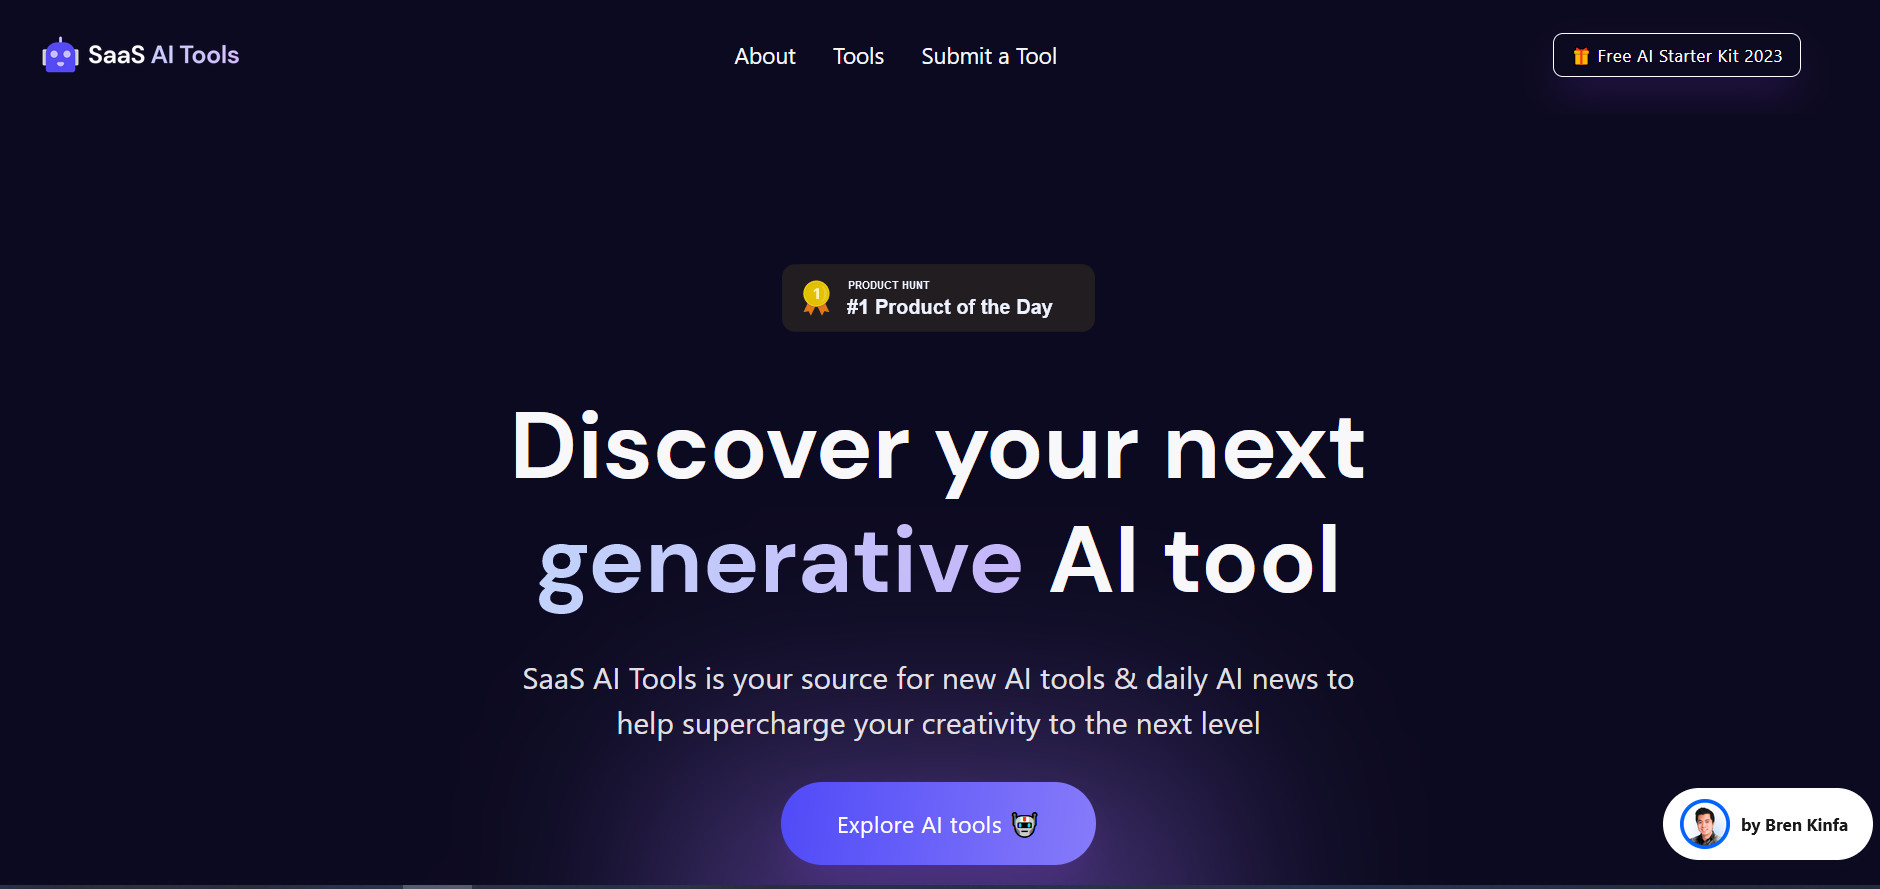 SaaS AI Tools，最新AI工具推荐及AI新闻资讯站